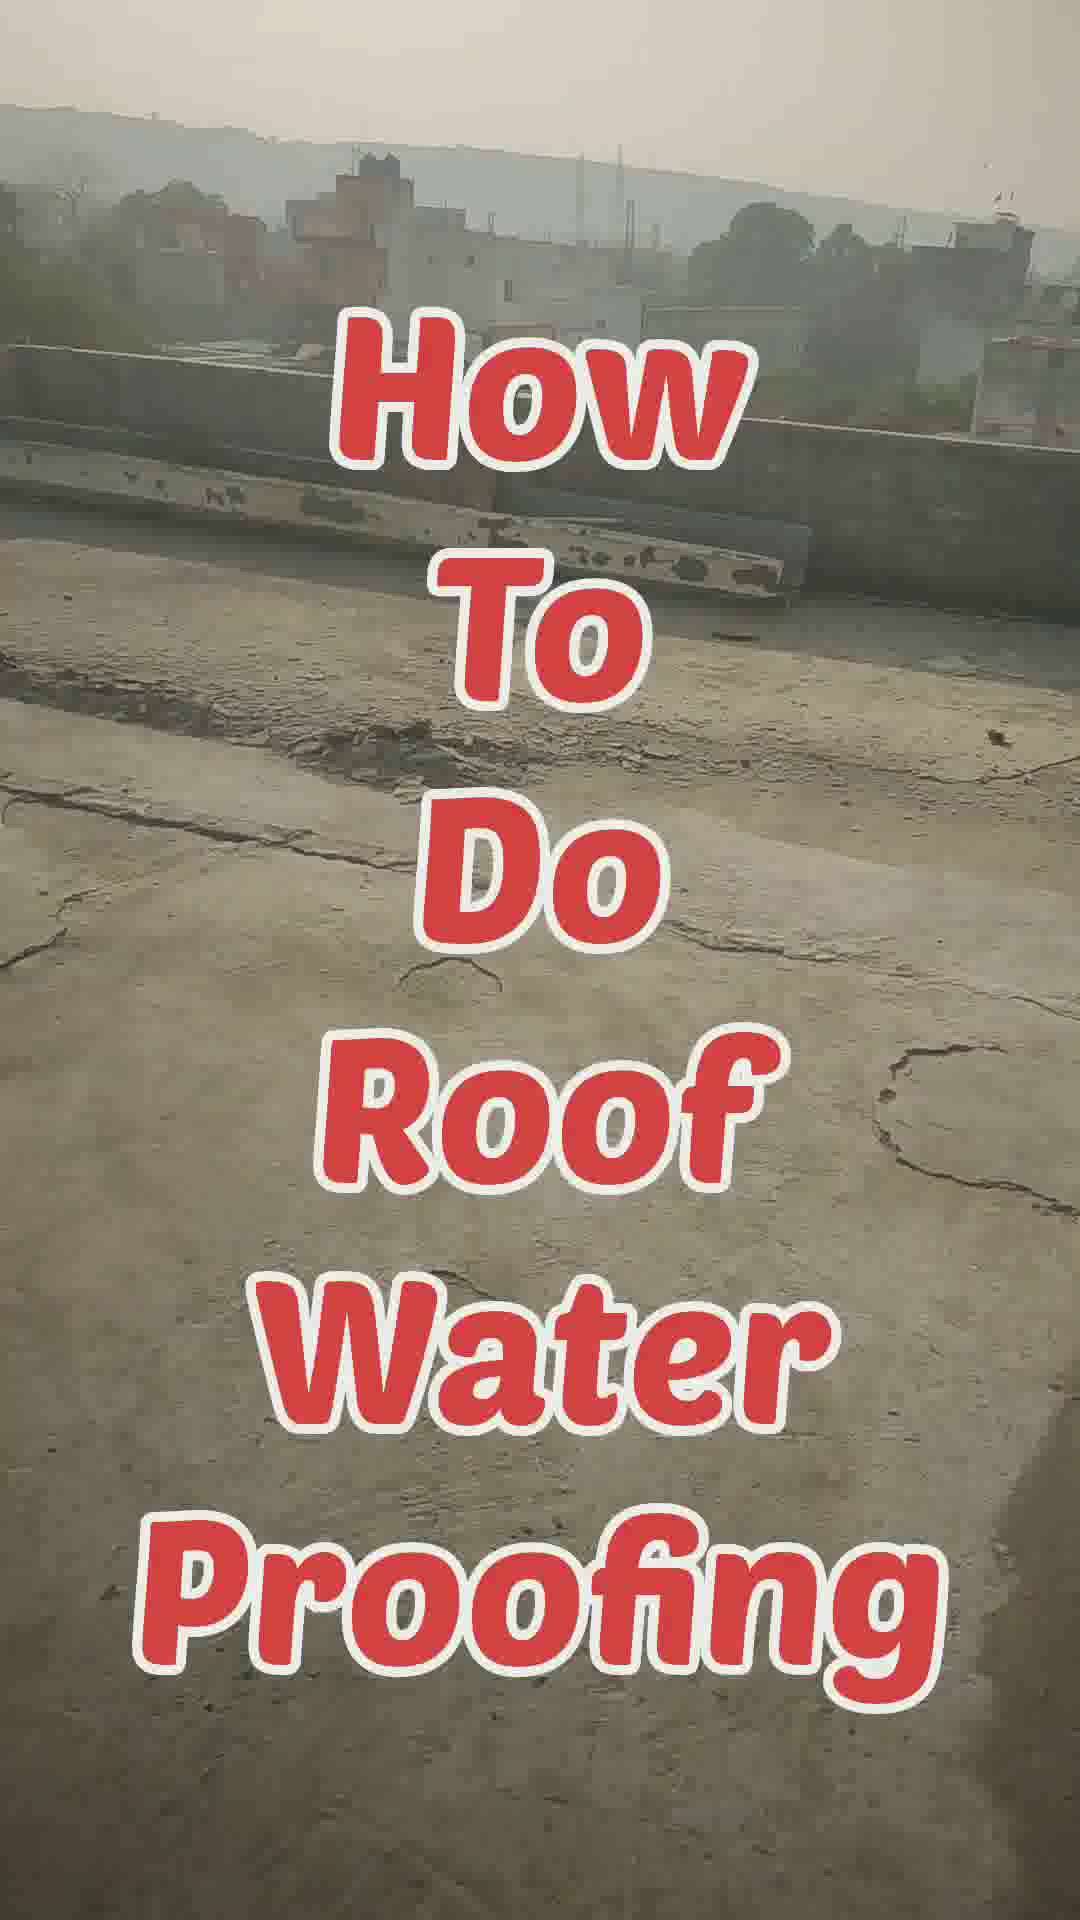 Roof water proofing
 #roofwaterproofing